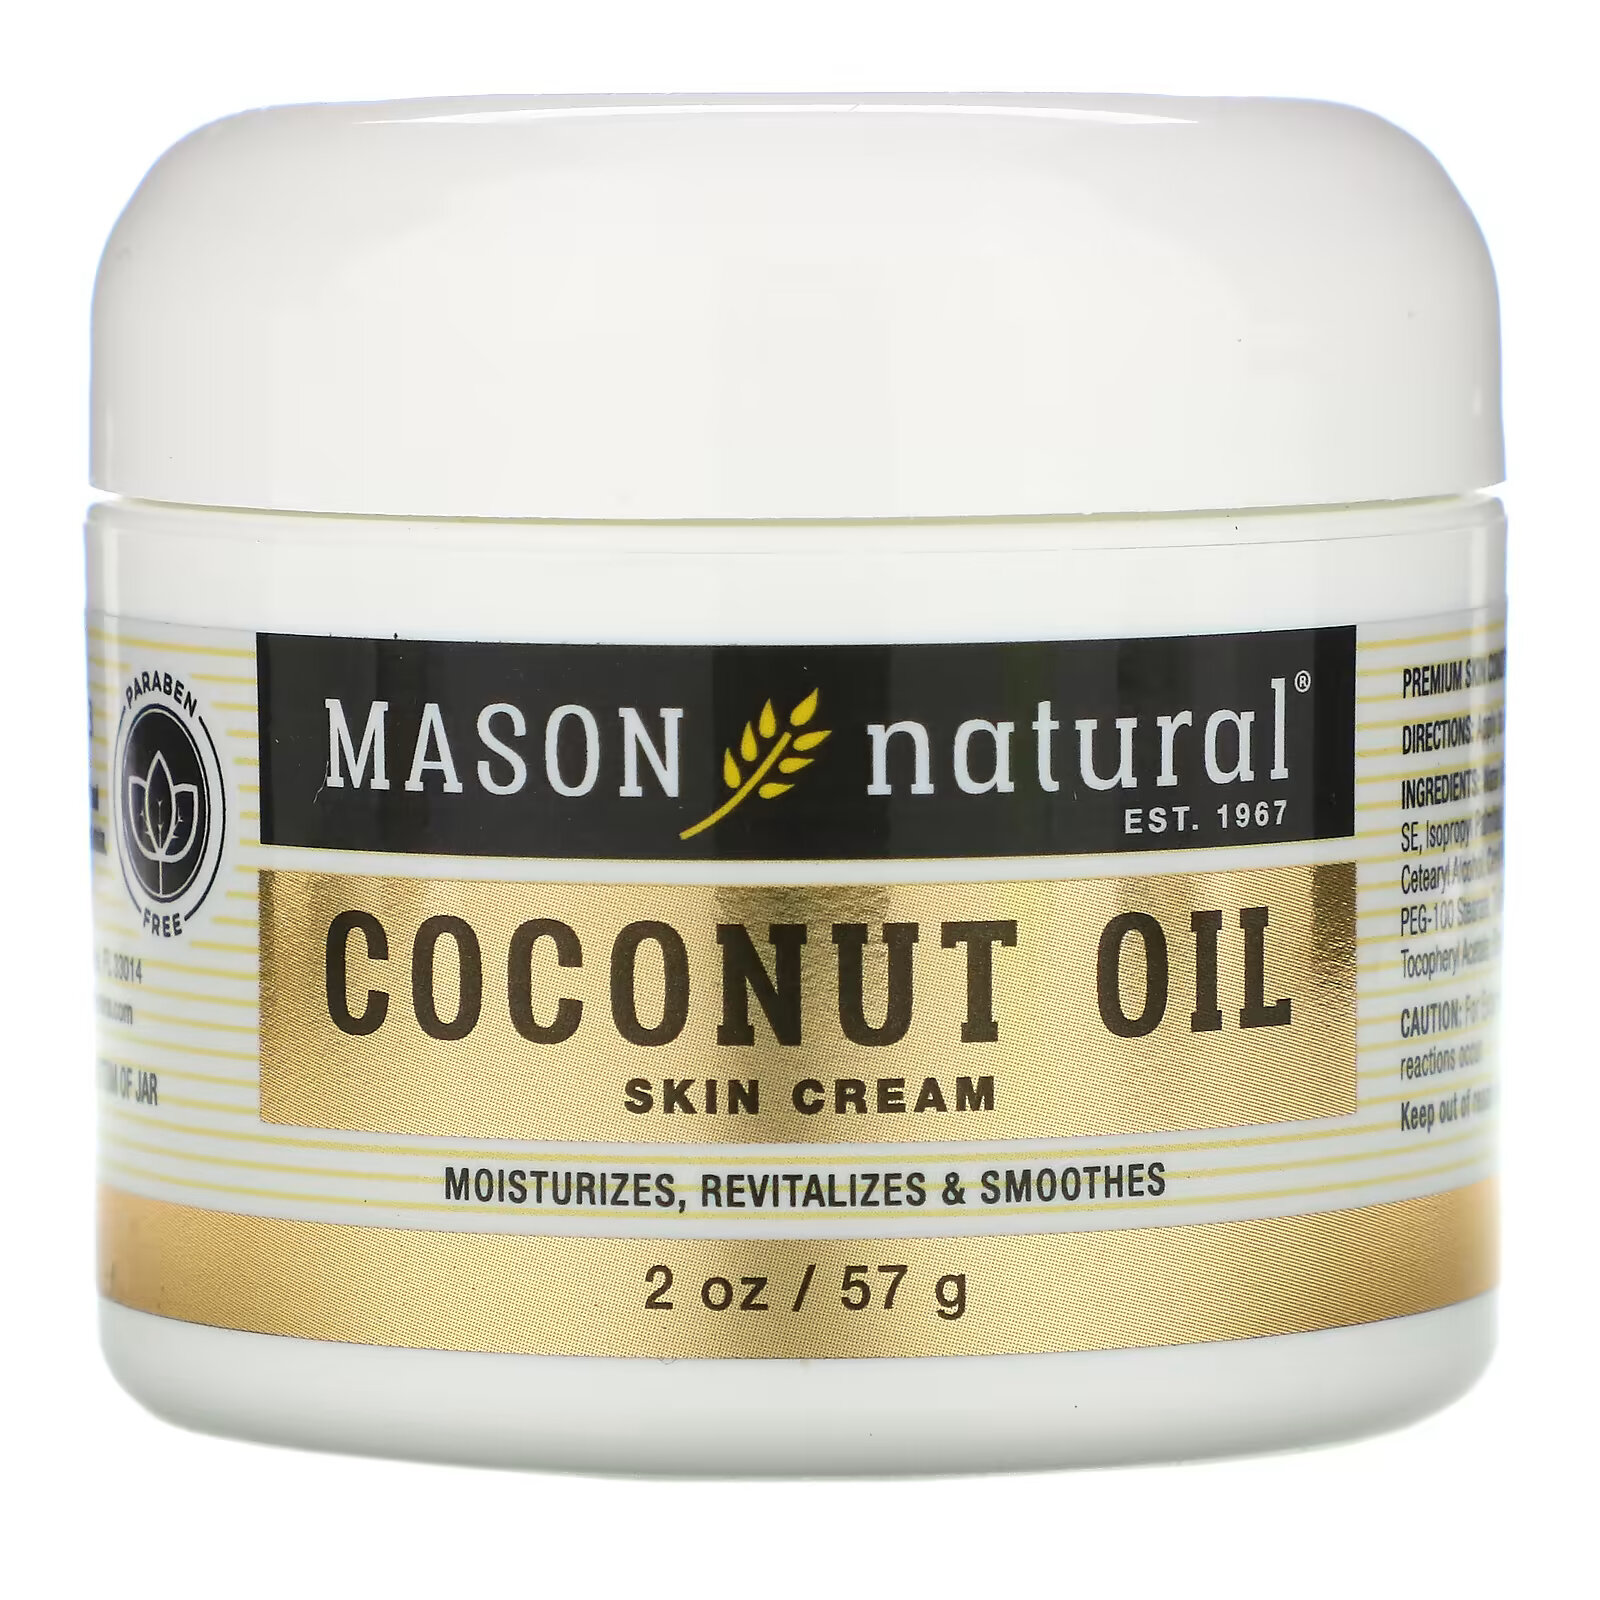 Крем Mason Natural для кожи с кокосовым маслом, 57 г крем для кожи mason natural с кокосовым маслом и крем для кожи премиального качества с коллагеном